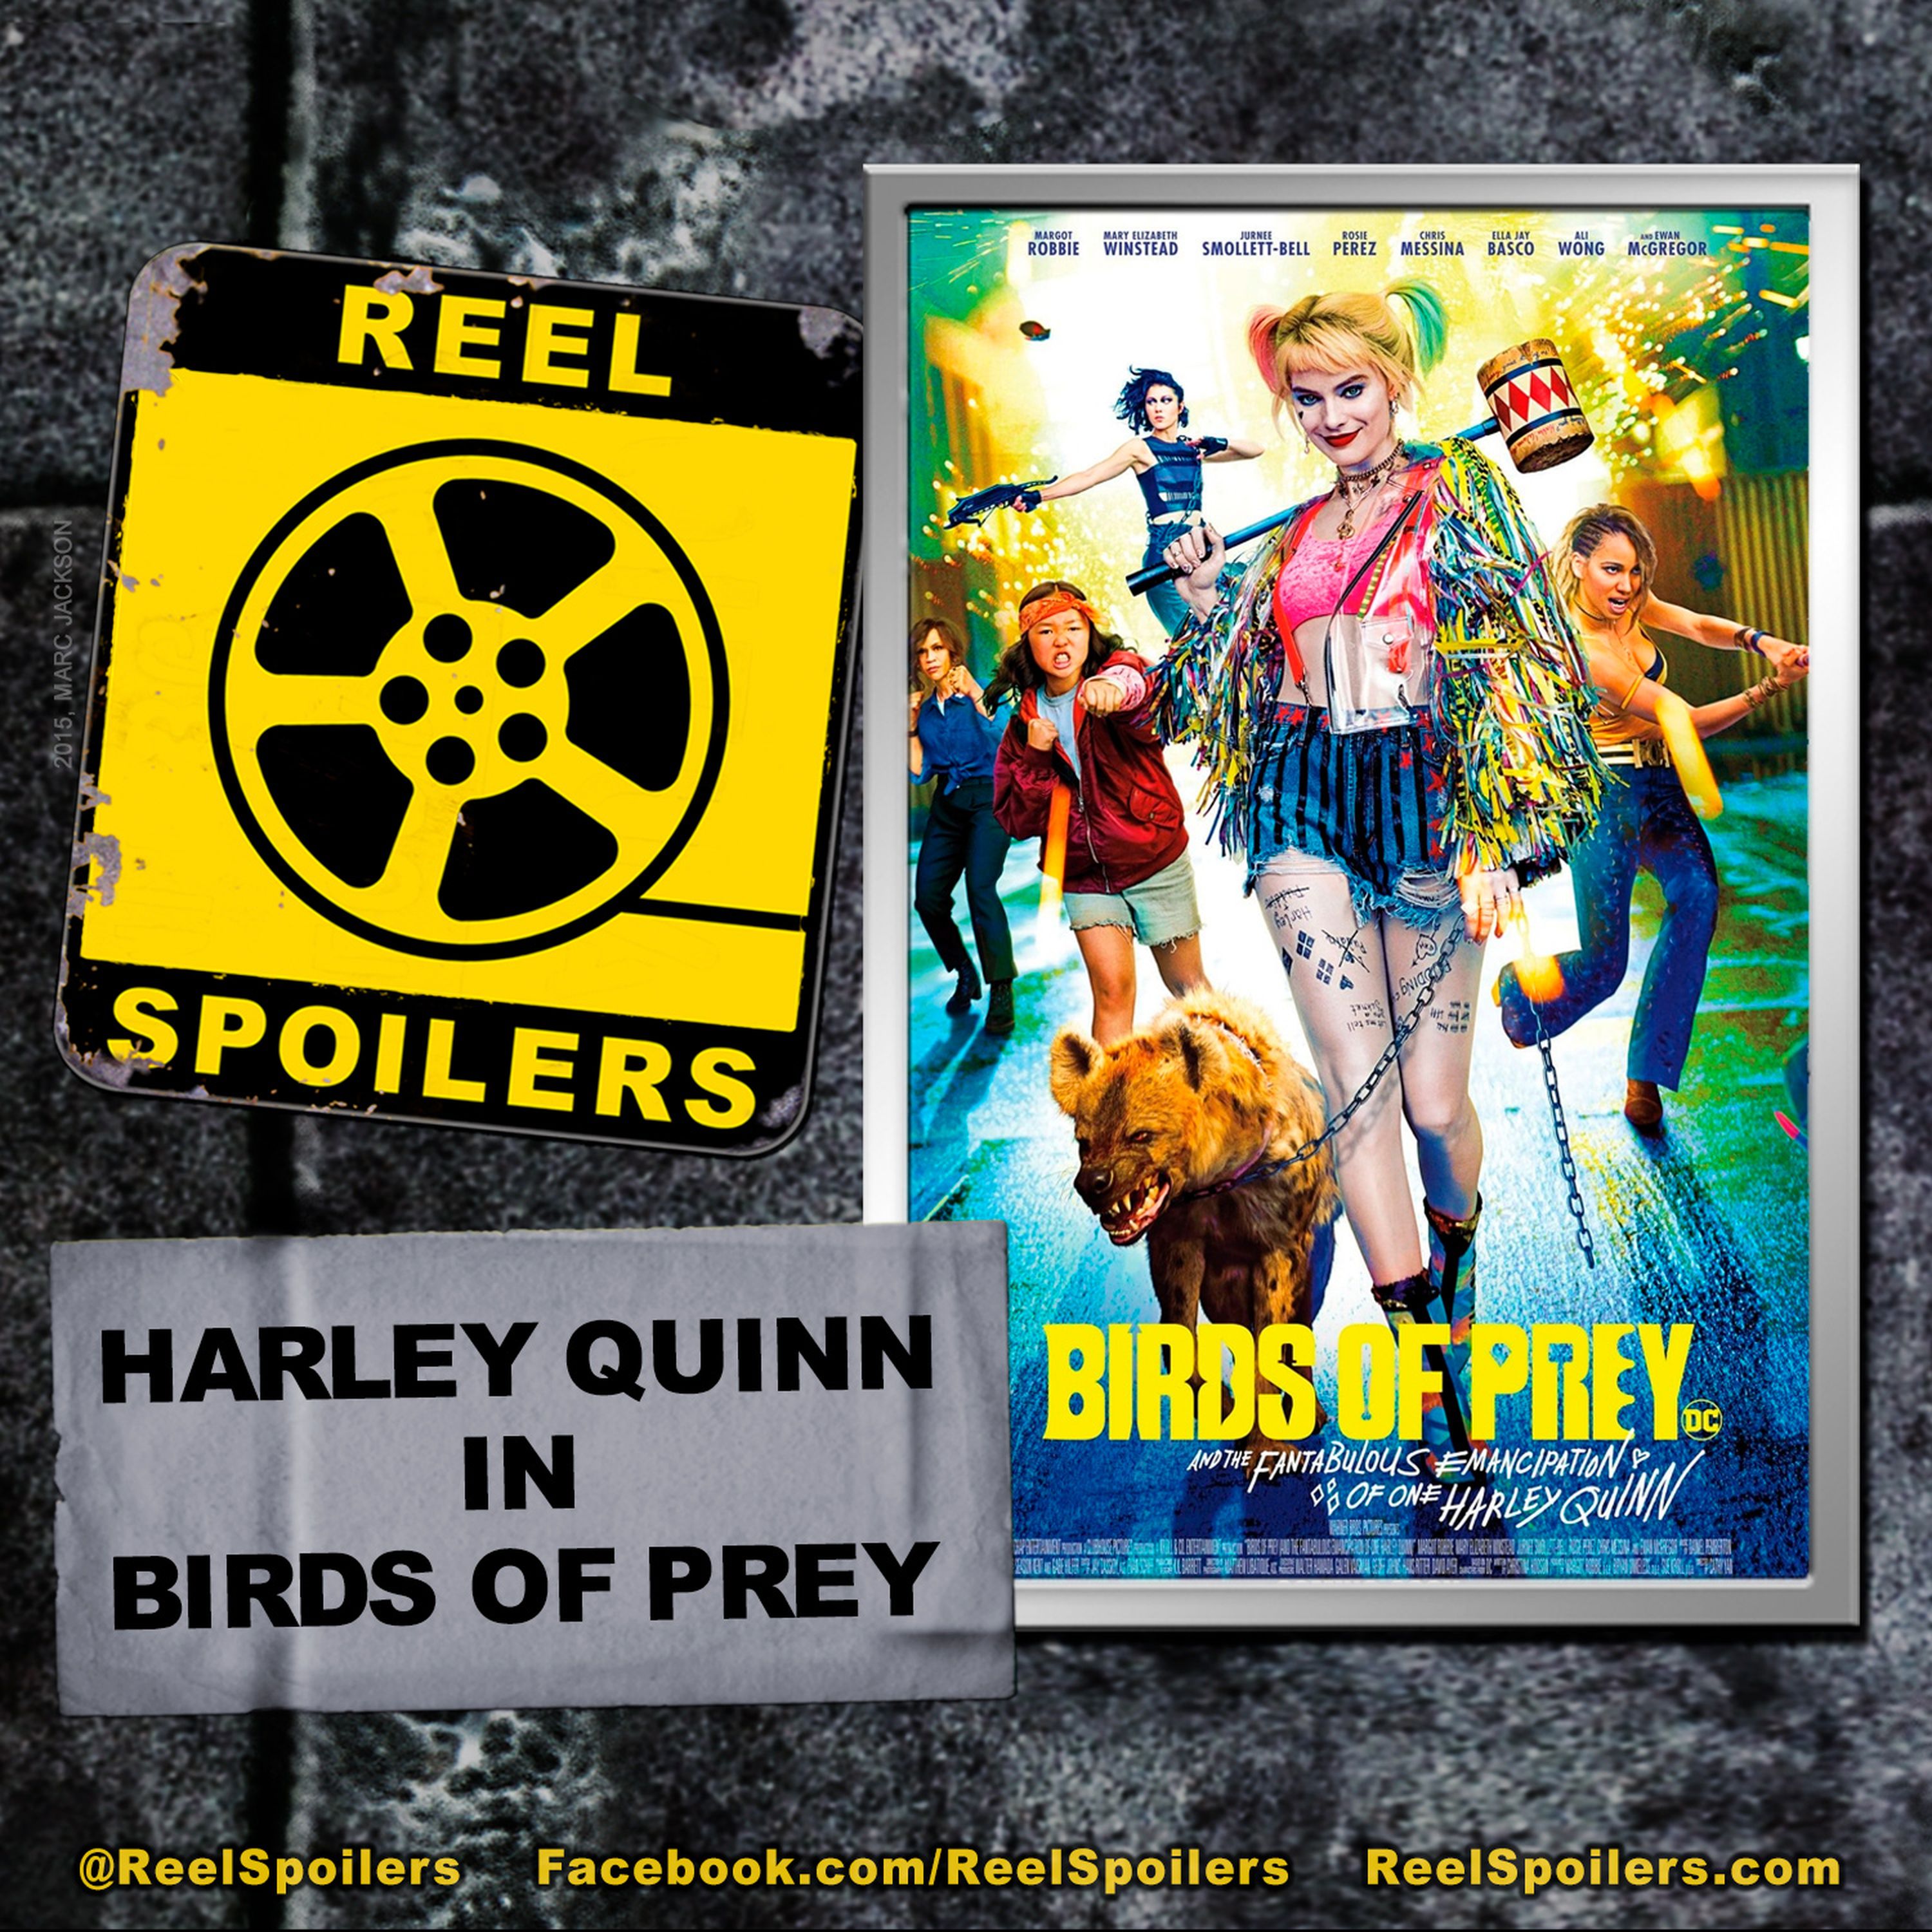 HARLEY QUINN: BIRDS OF PREY Starring Margot Robbie, Mary Elizabeth Winstead, Jurnee Smollett-Bell Image